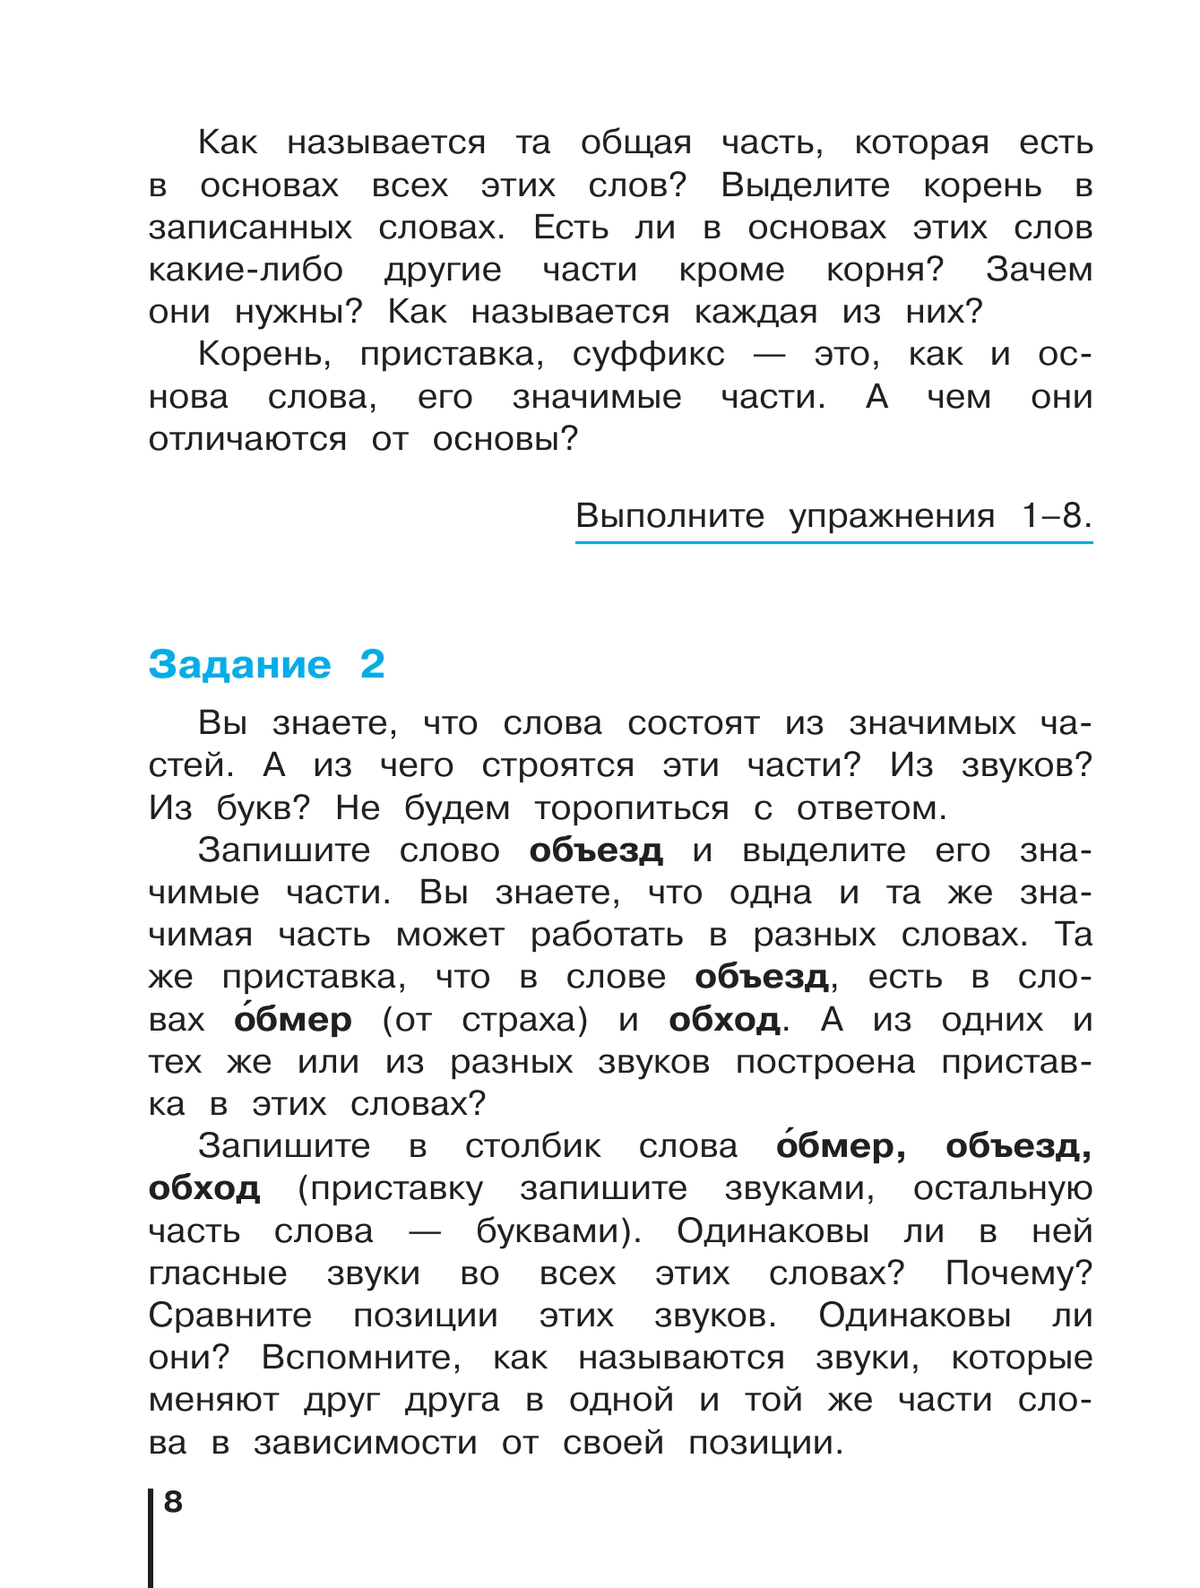 Русский язык. 3 класс. Учебник. В 2 ч. Часть 1 5